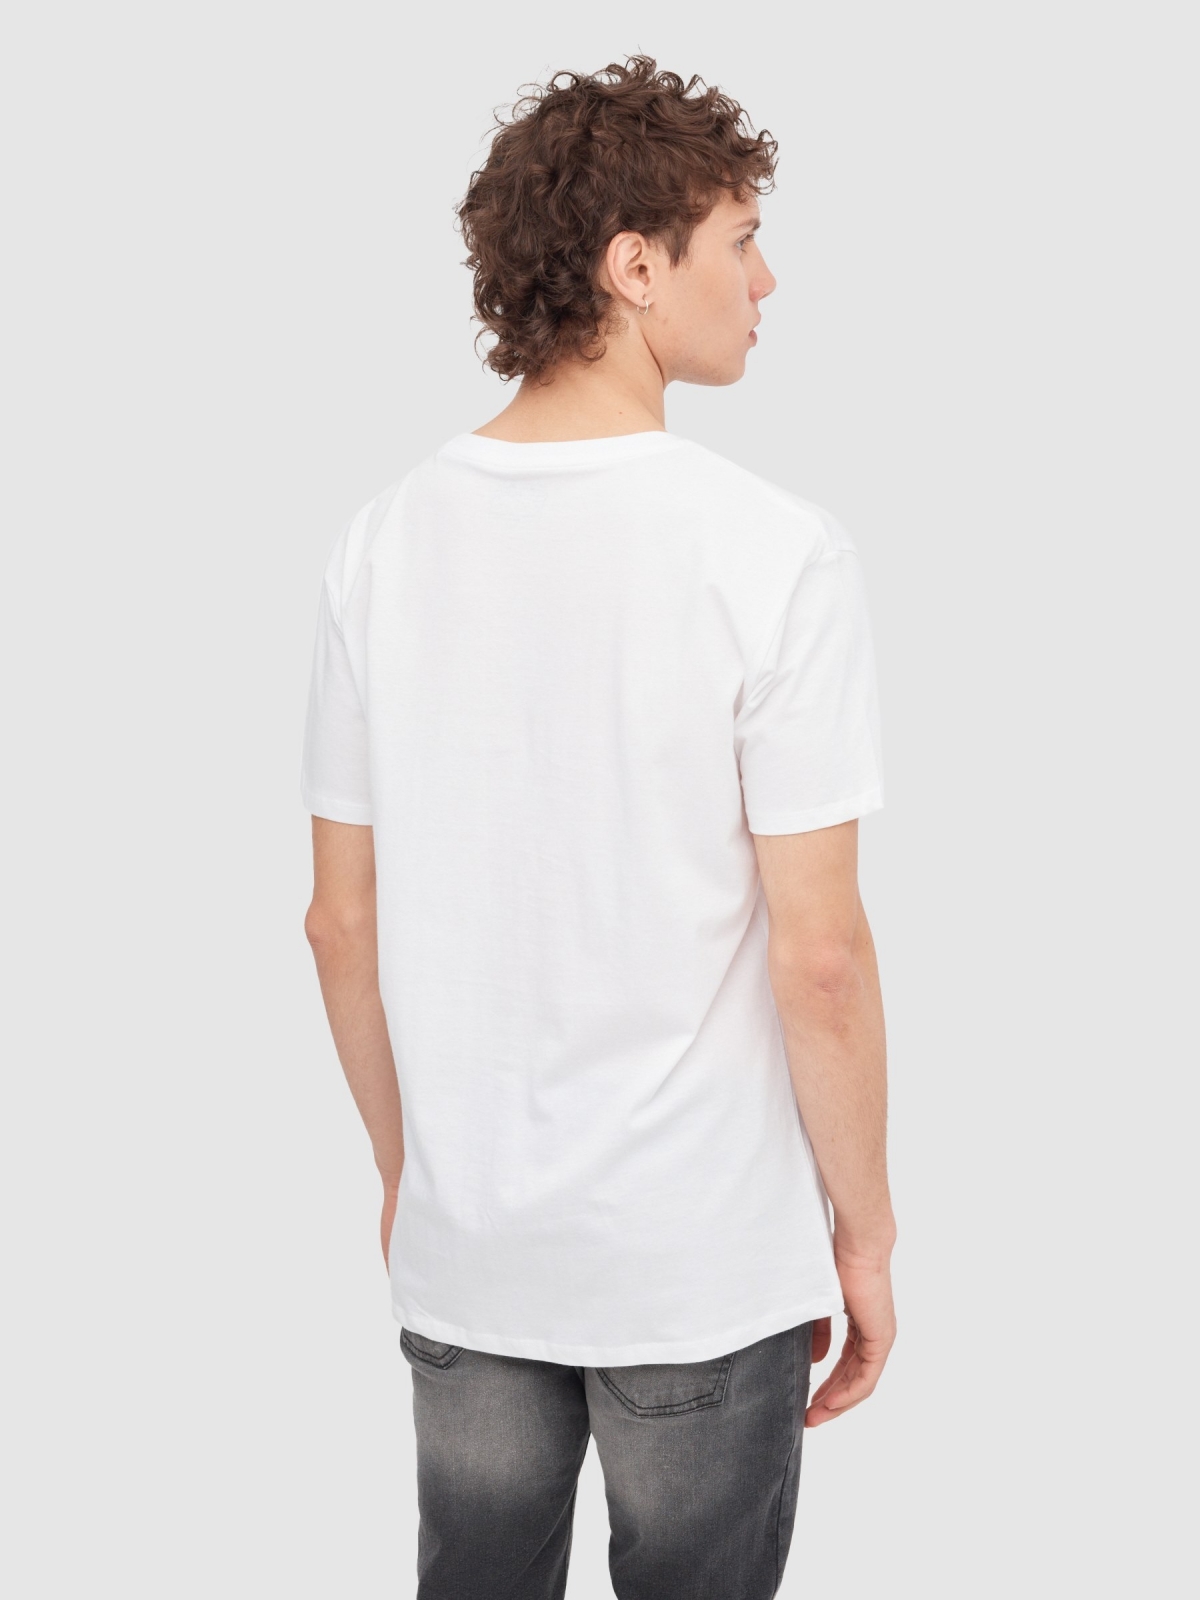 T-Shirt do Bob Esponja branco vista meia traseira